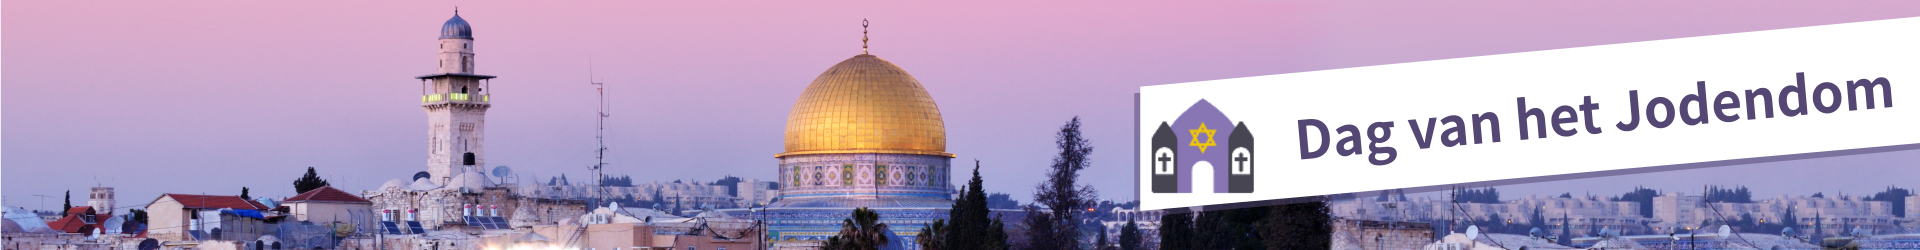 Categorie: Dag van het Jodendom 2014